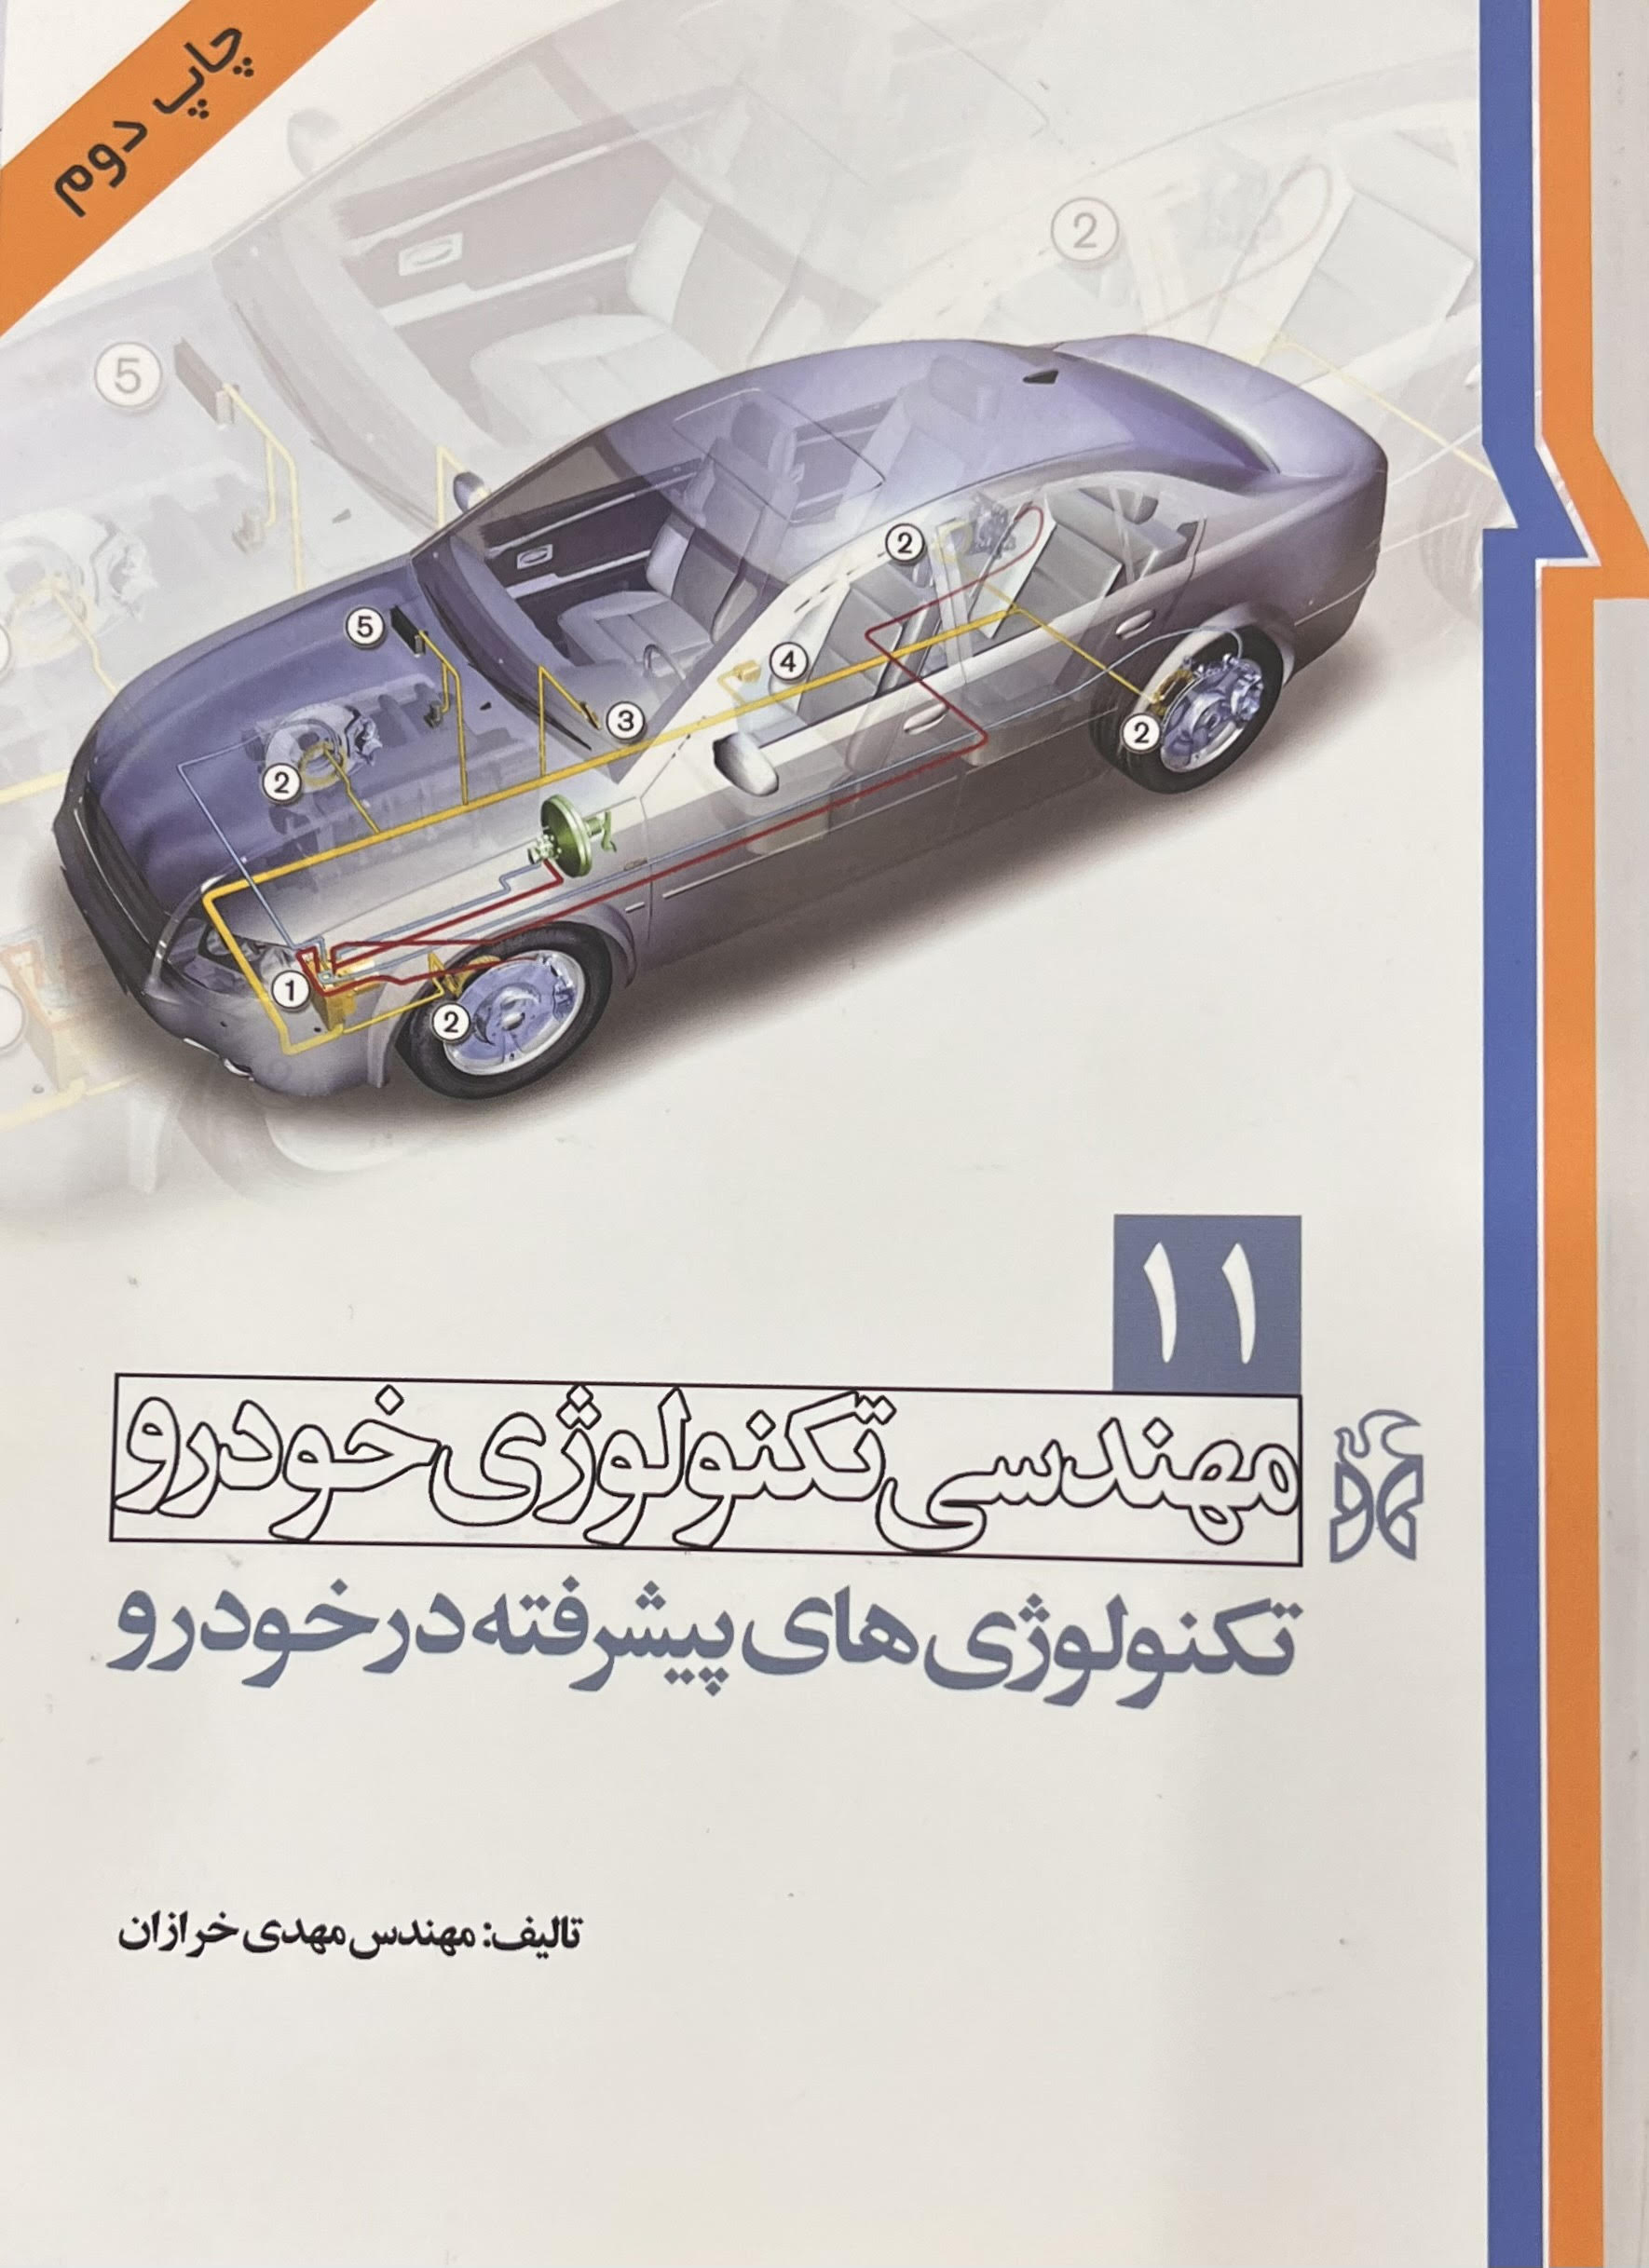 معرفی کتاب برای درس سیستم های هدایت و کنترل خودرو